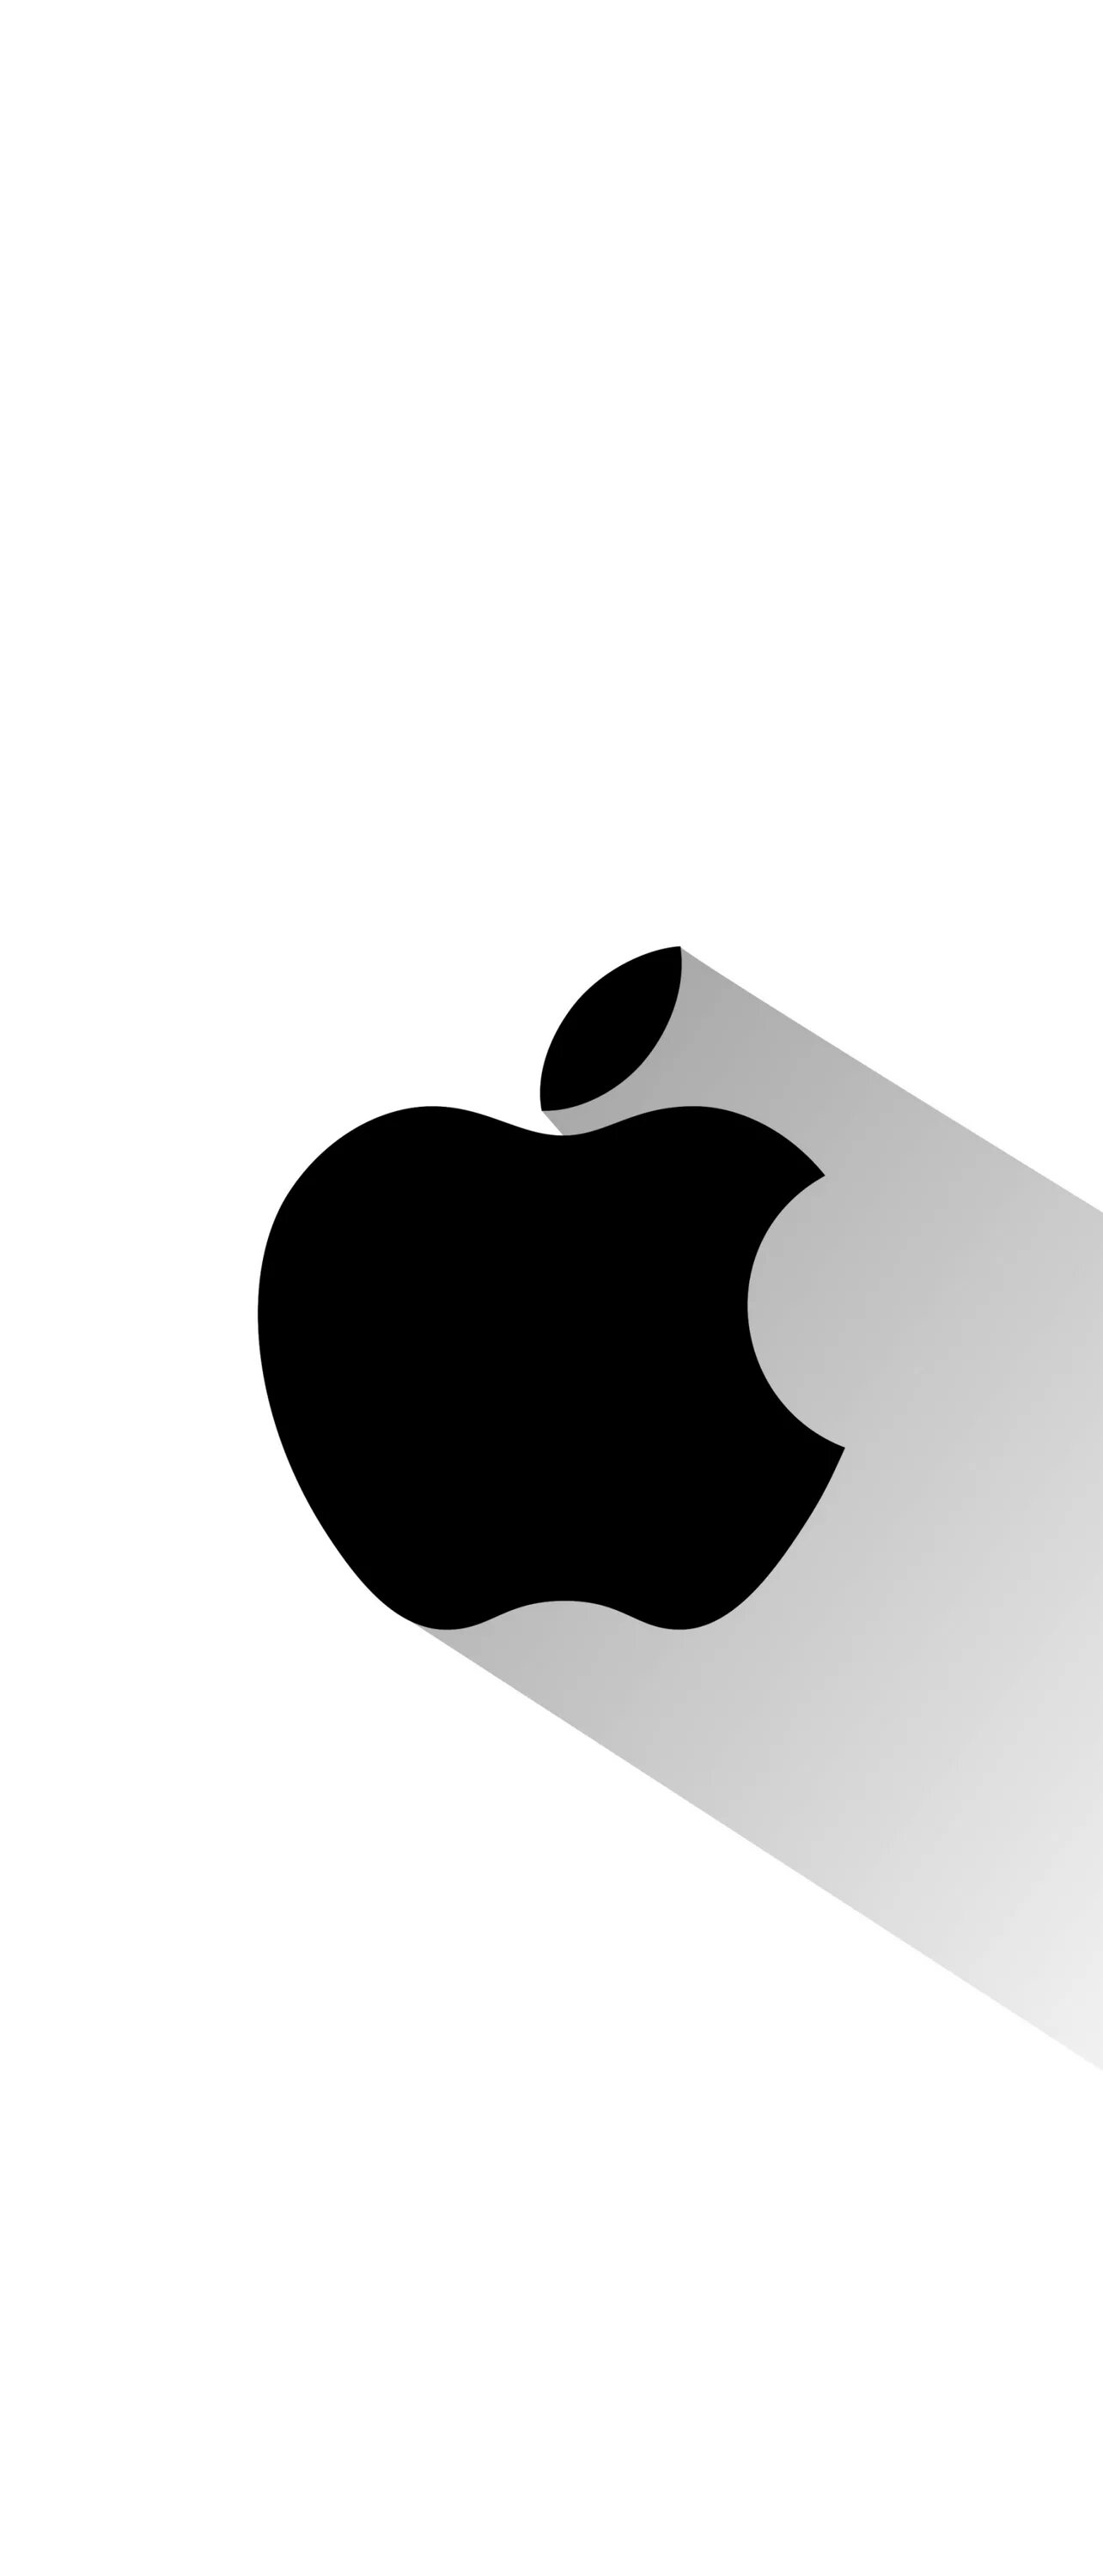 Иконка на обои телефона. Значок айфона. Логотип Apple. Значок АПЛ. Яблоко айфон.